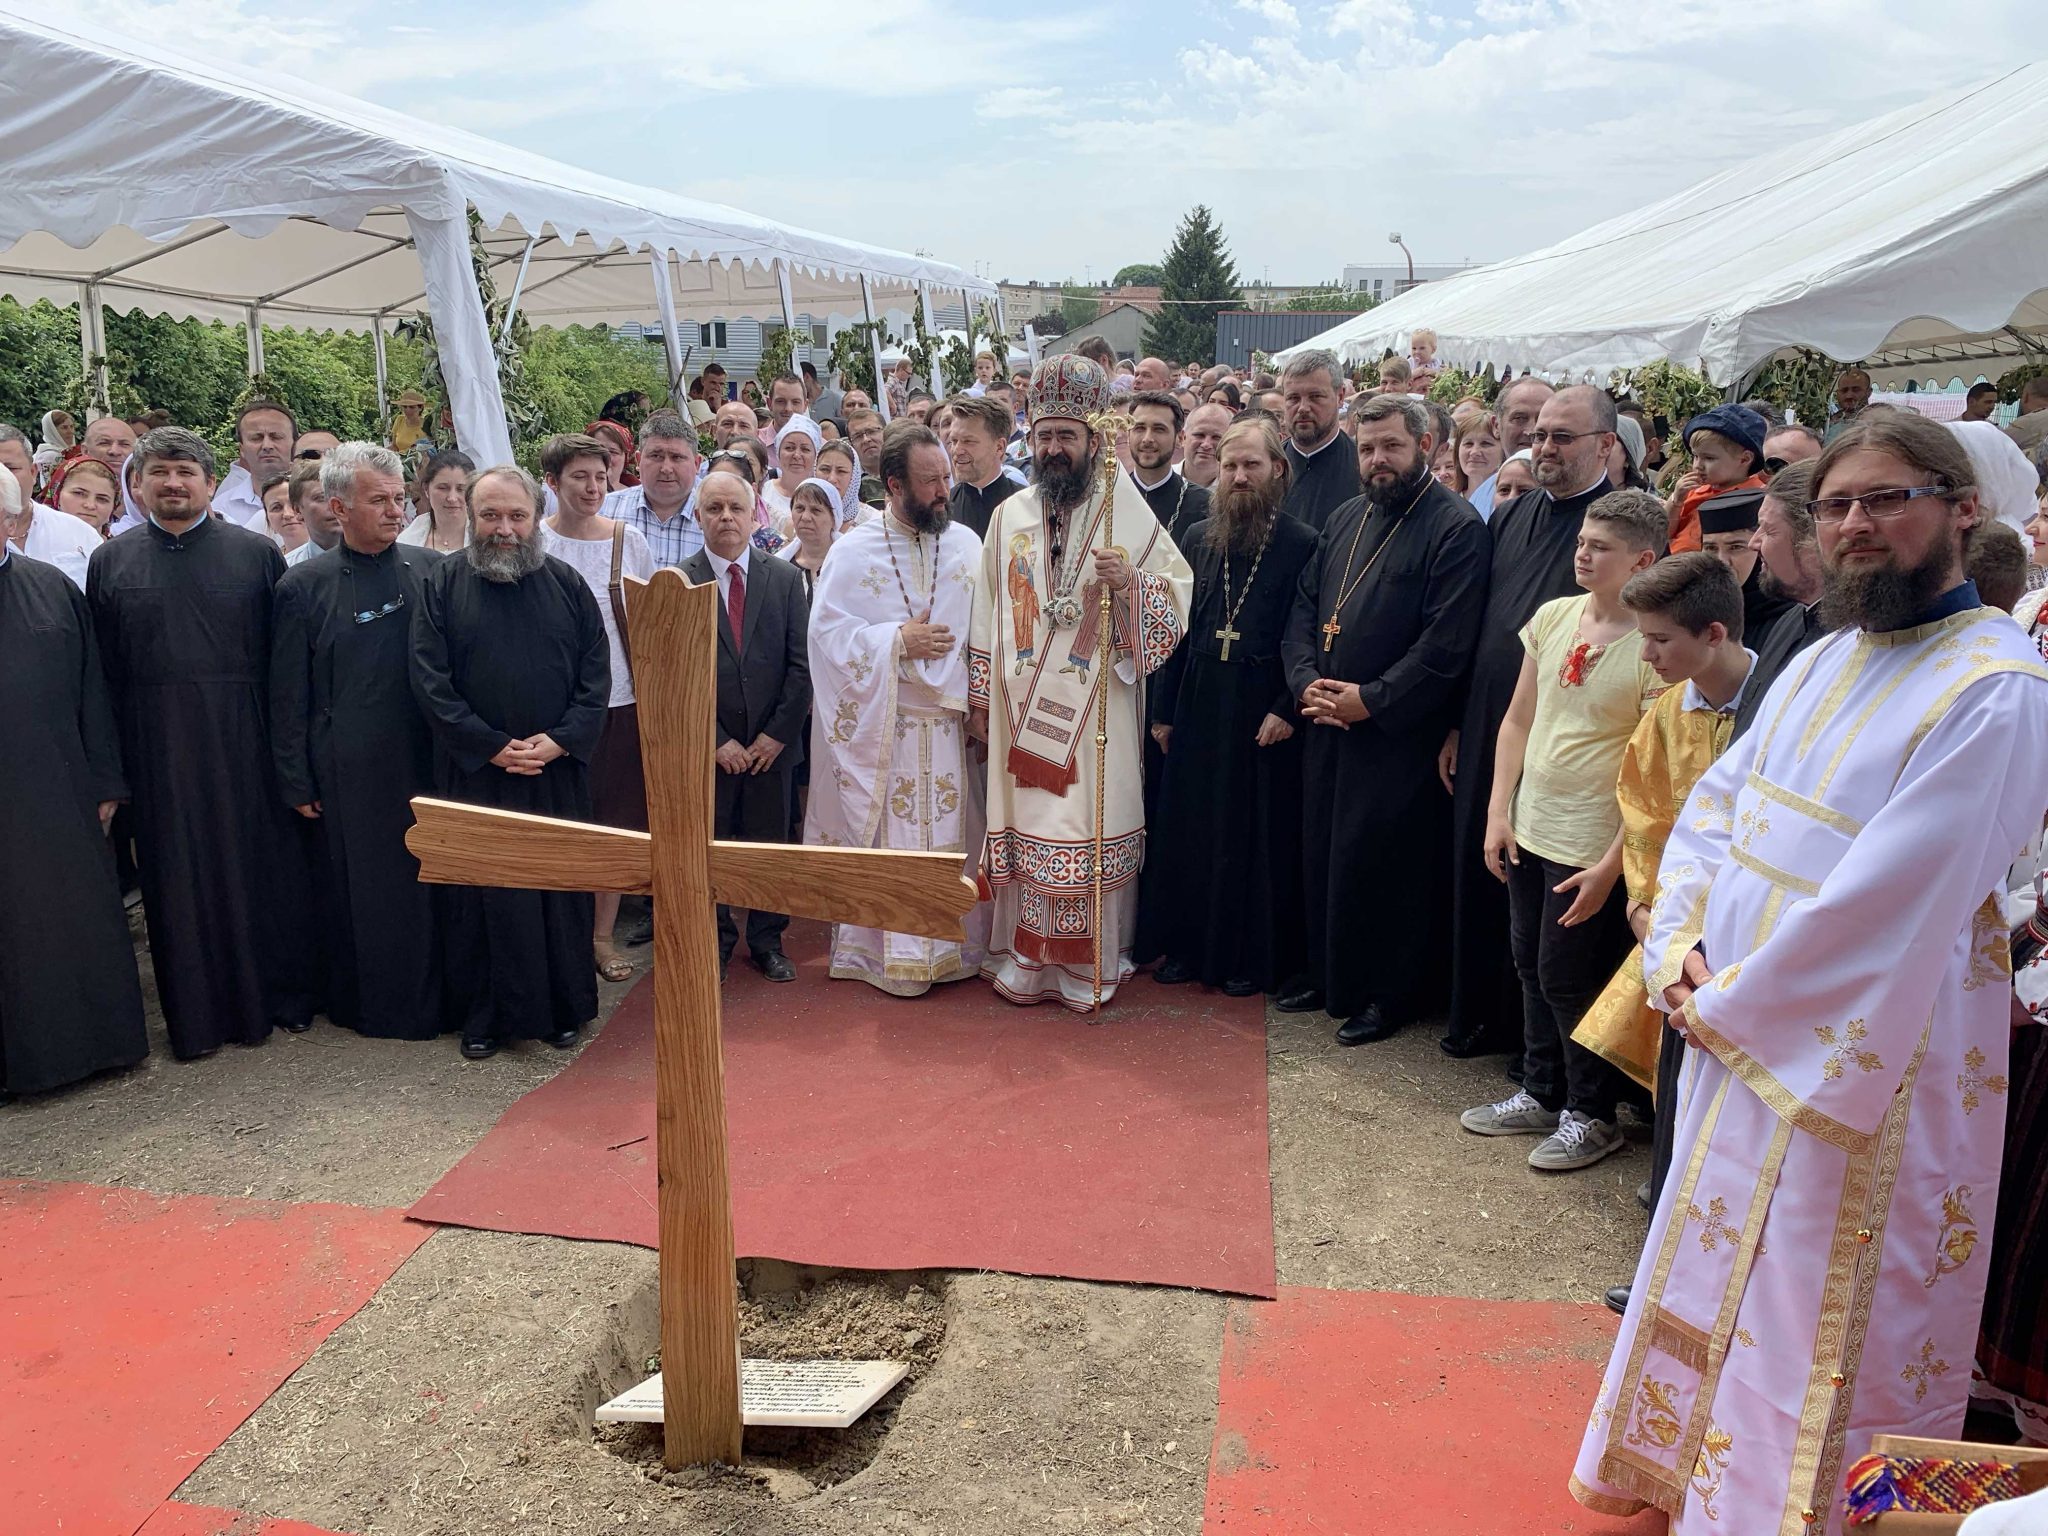 Bénédiction de la première pierre de la nouvelle église orthodoxe roumaine à Montreuil